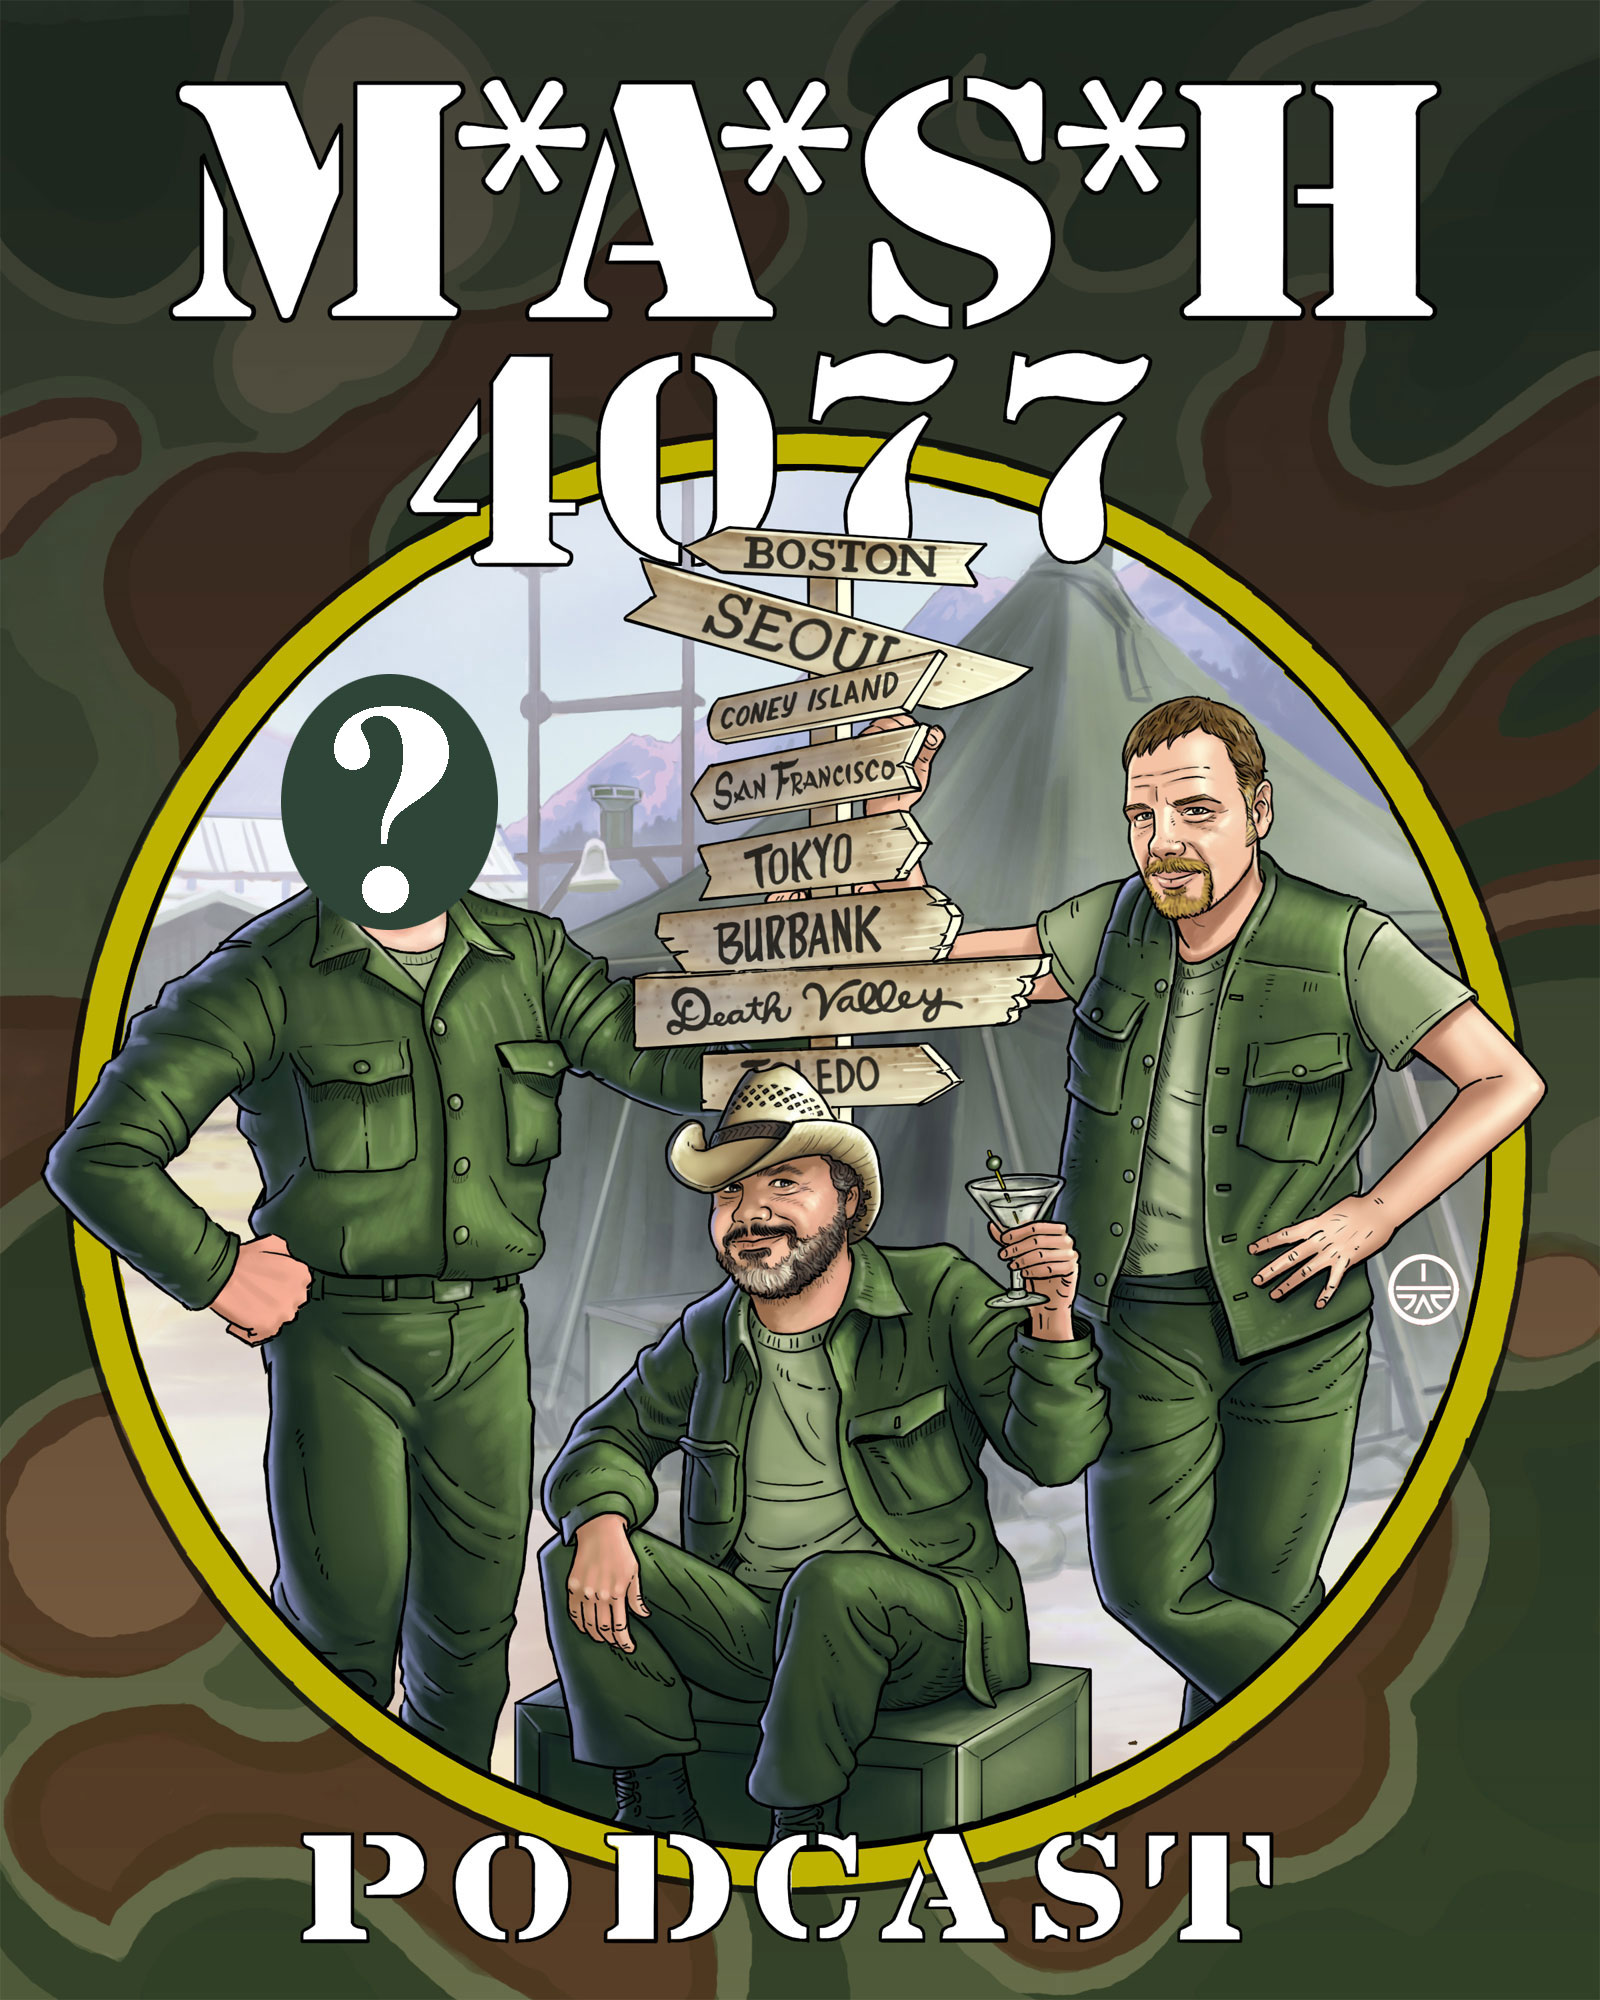 MASH 4077 Podcast Episode 141